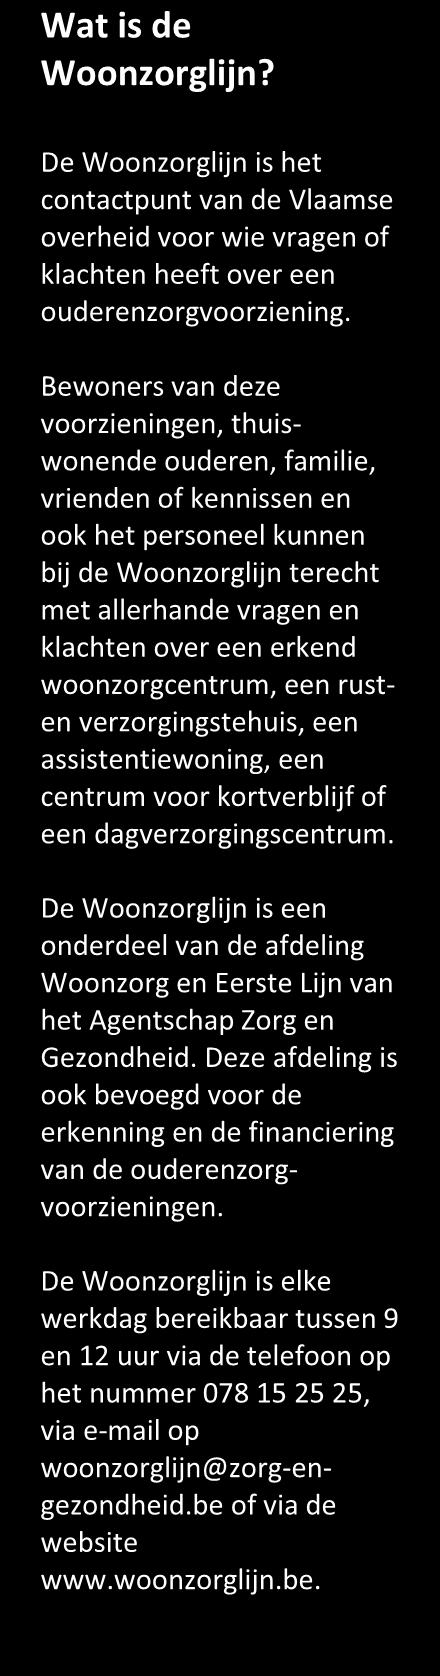 1 De Woonzorglijn in 2017 1.1 SNELLERE RAPPORTAGE De Woonzorglijn heeft in 2016 een nieuw registratie- en ticketingsysteem in gebruik genomen.